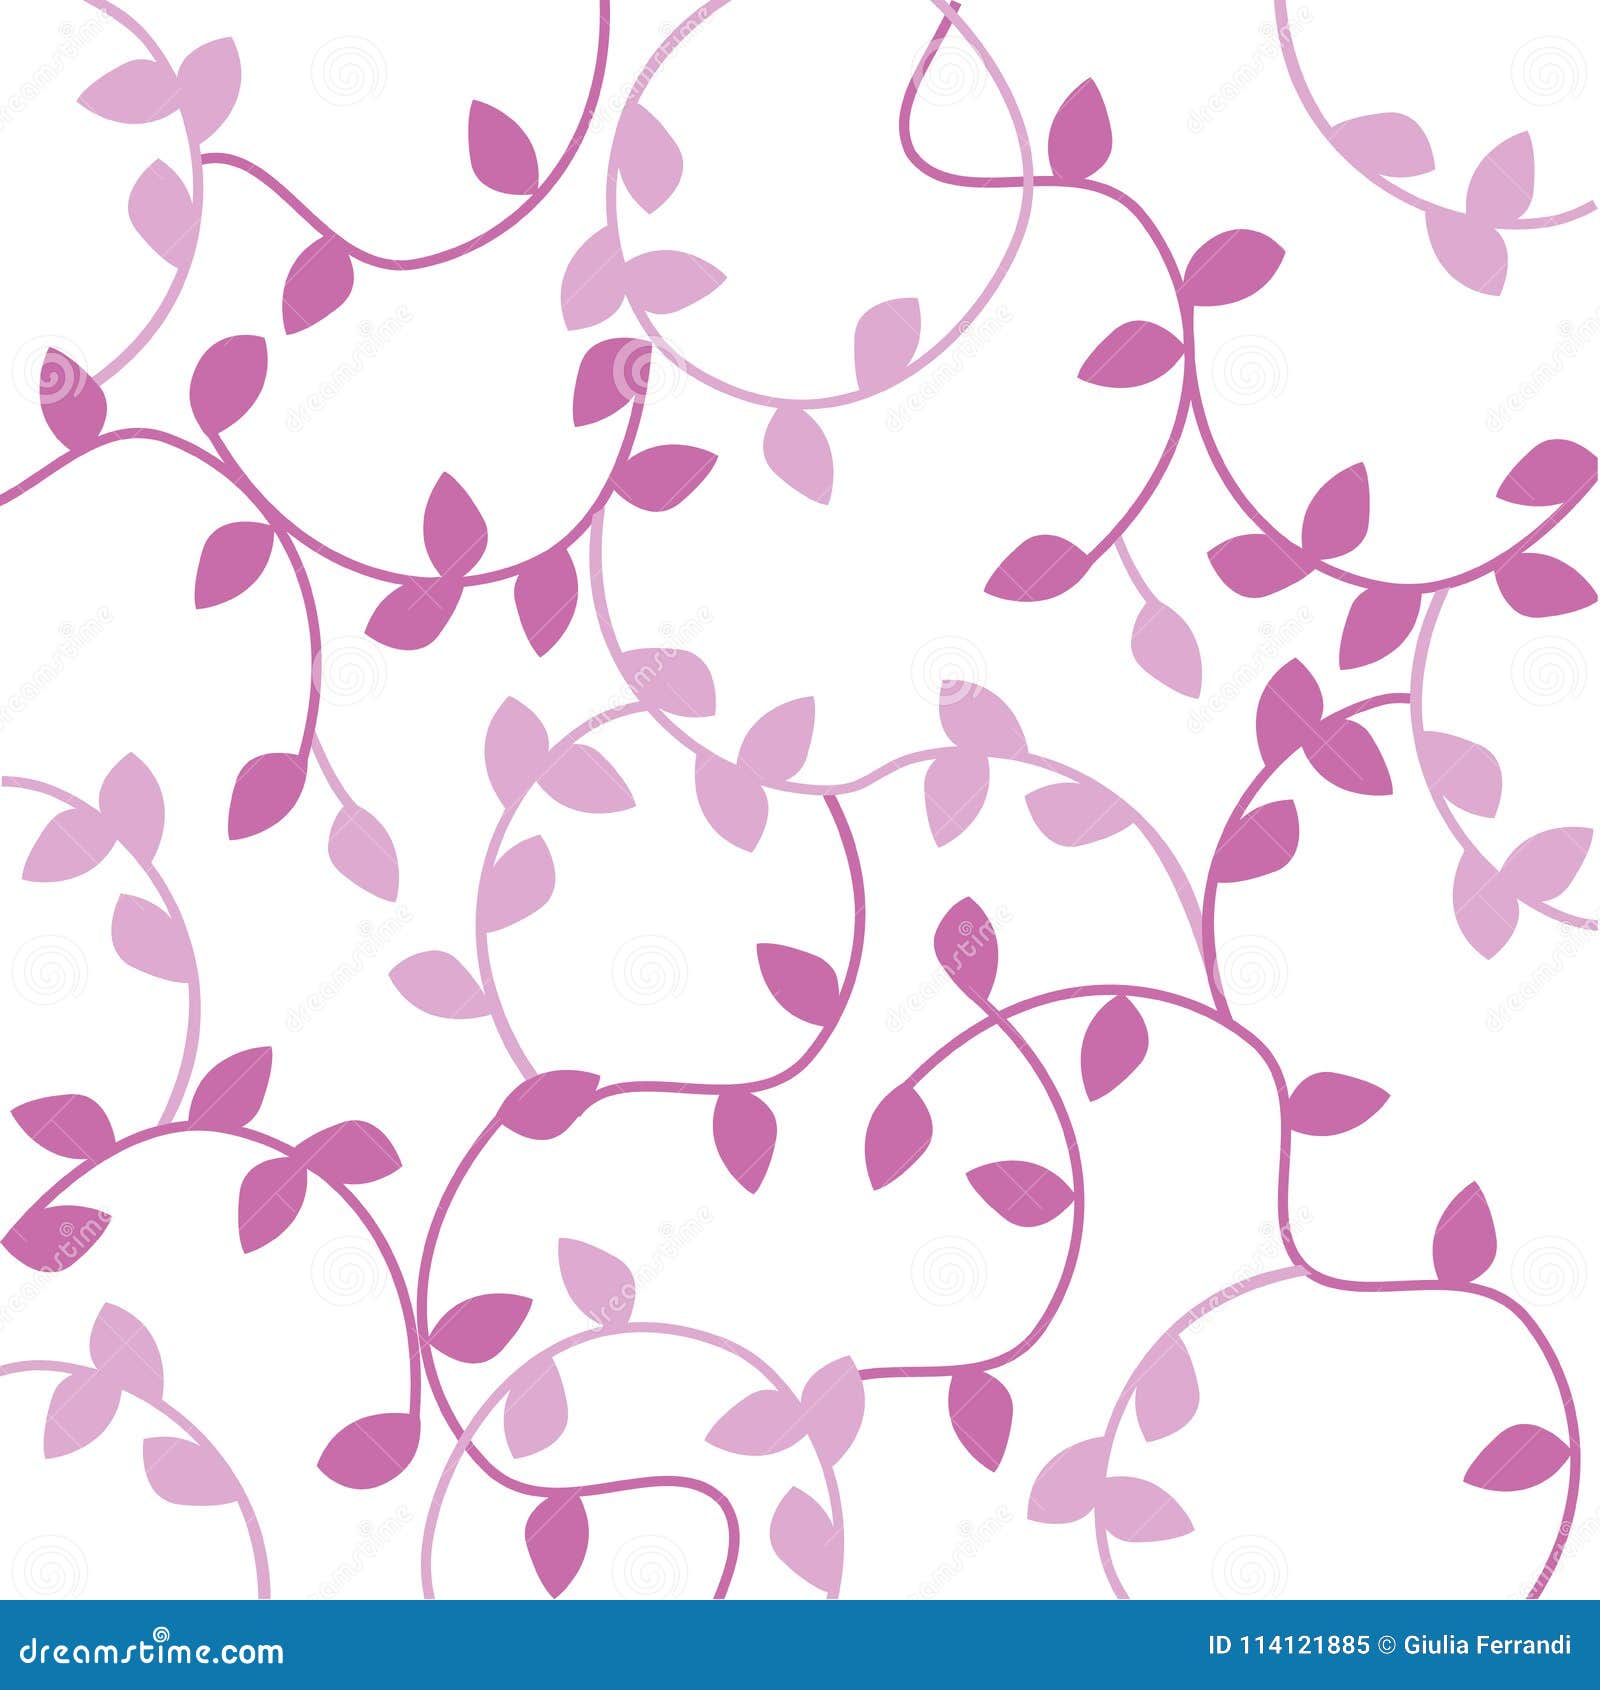 Pink Leaf Background Wallpaper, Spring Concept Stock Illustration